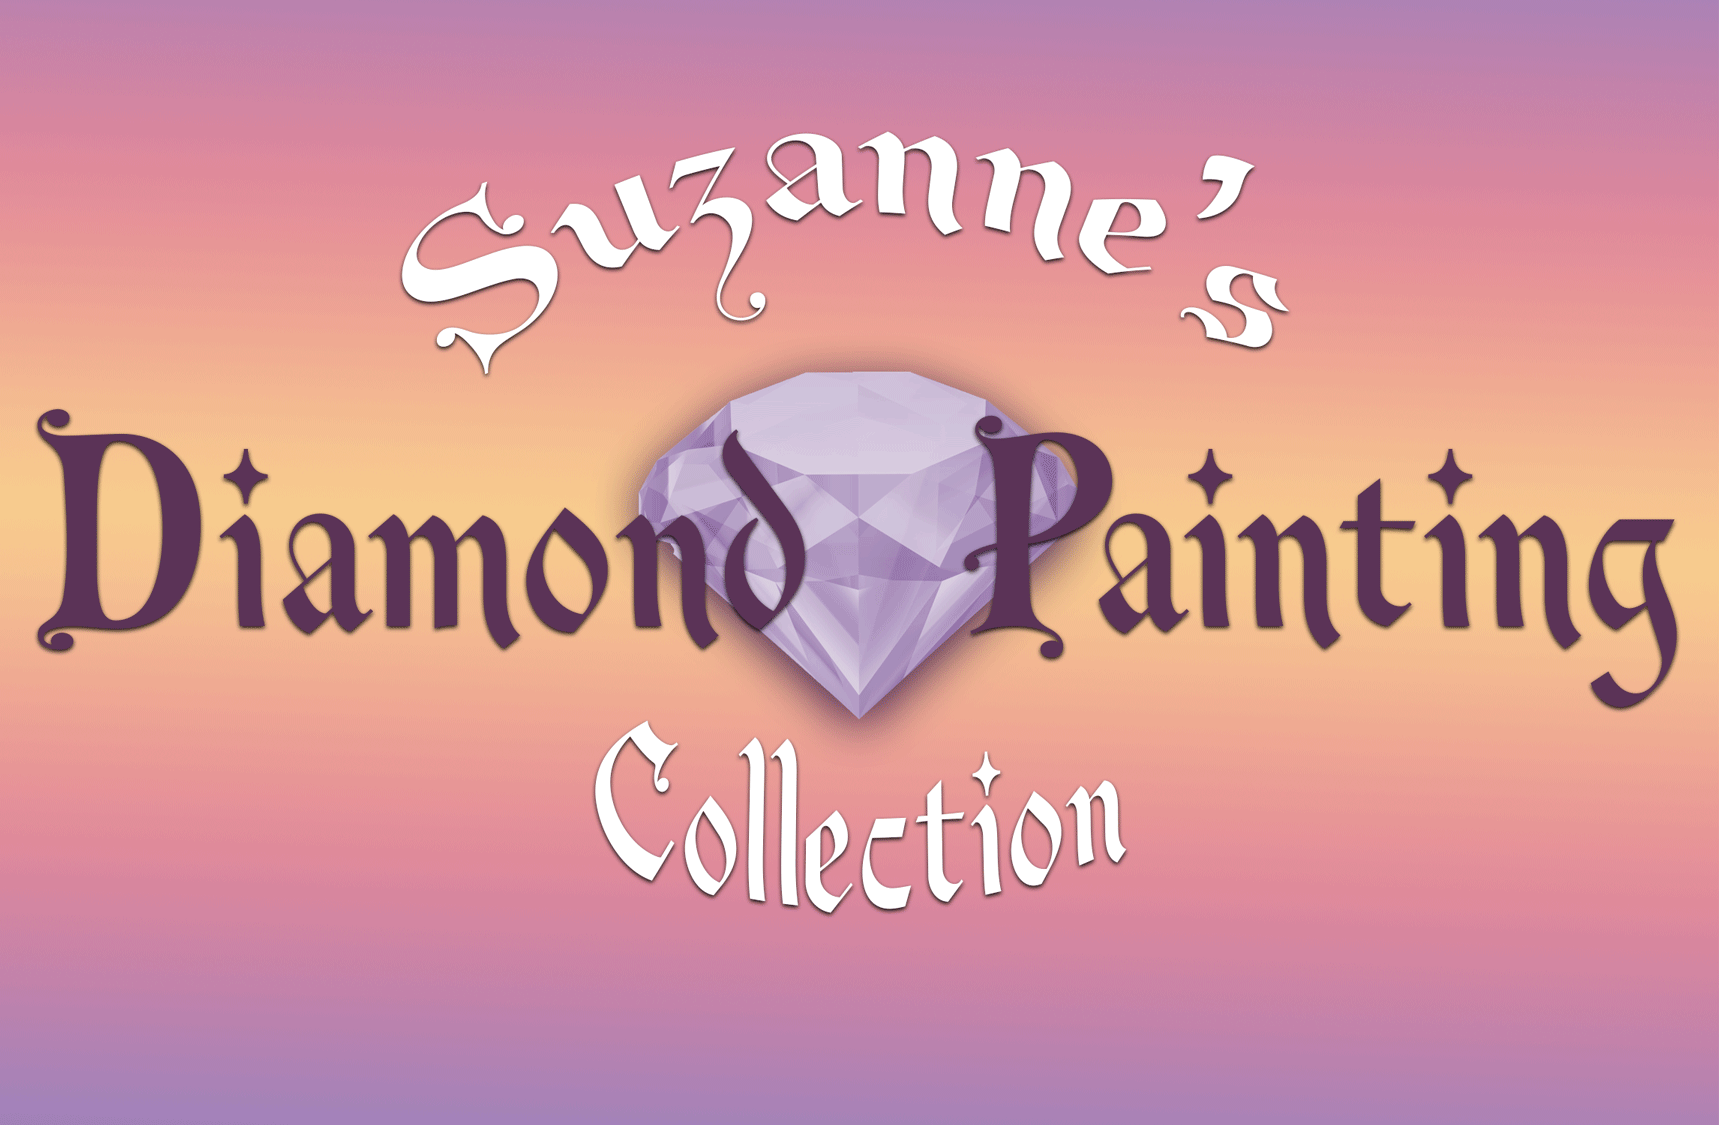 DIAMOND DOTZ ® - Bubbles, Full Drill, Square Dotz, Diamond Painting Kits,  Diamond Art Kits for Adults, Gem Art, Diamond Art, Diamond Dotz Kits